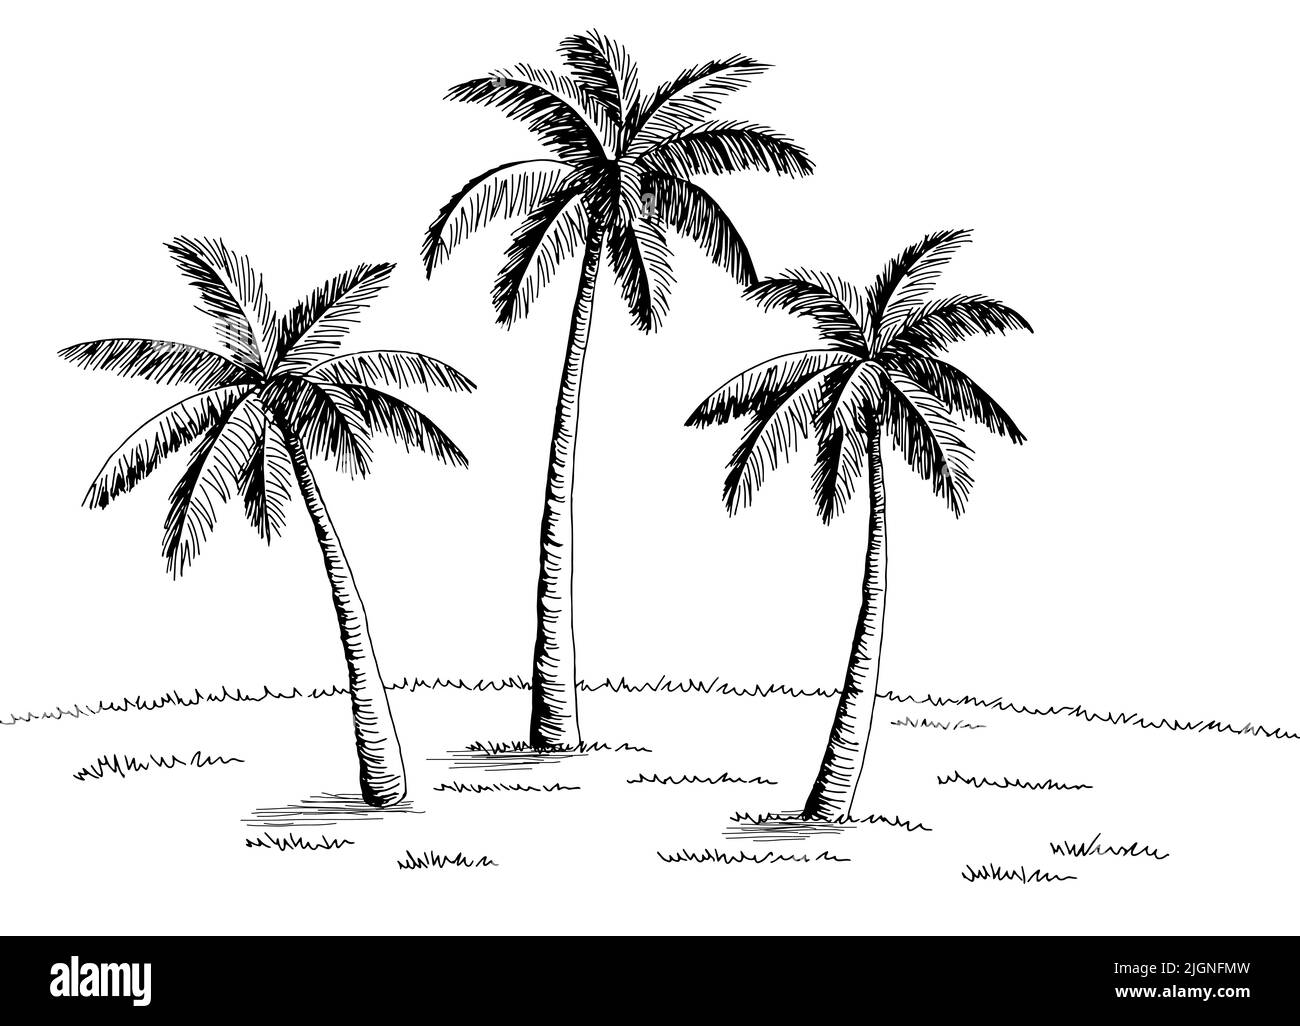 Palm grove plantation graphique noir blanc paysage dessin illustration vecteur Illustration de Vecteur